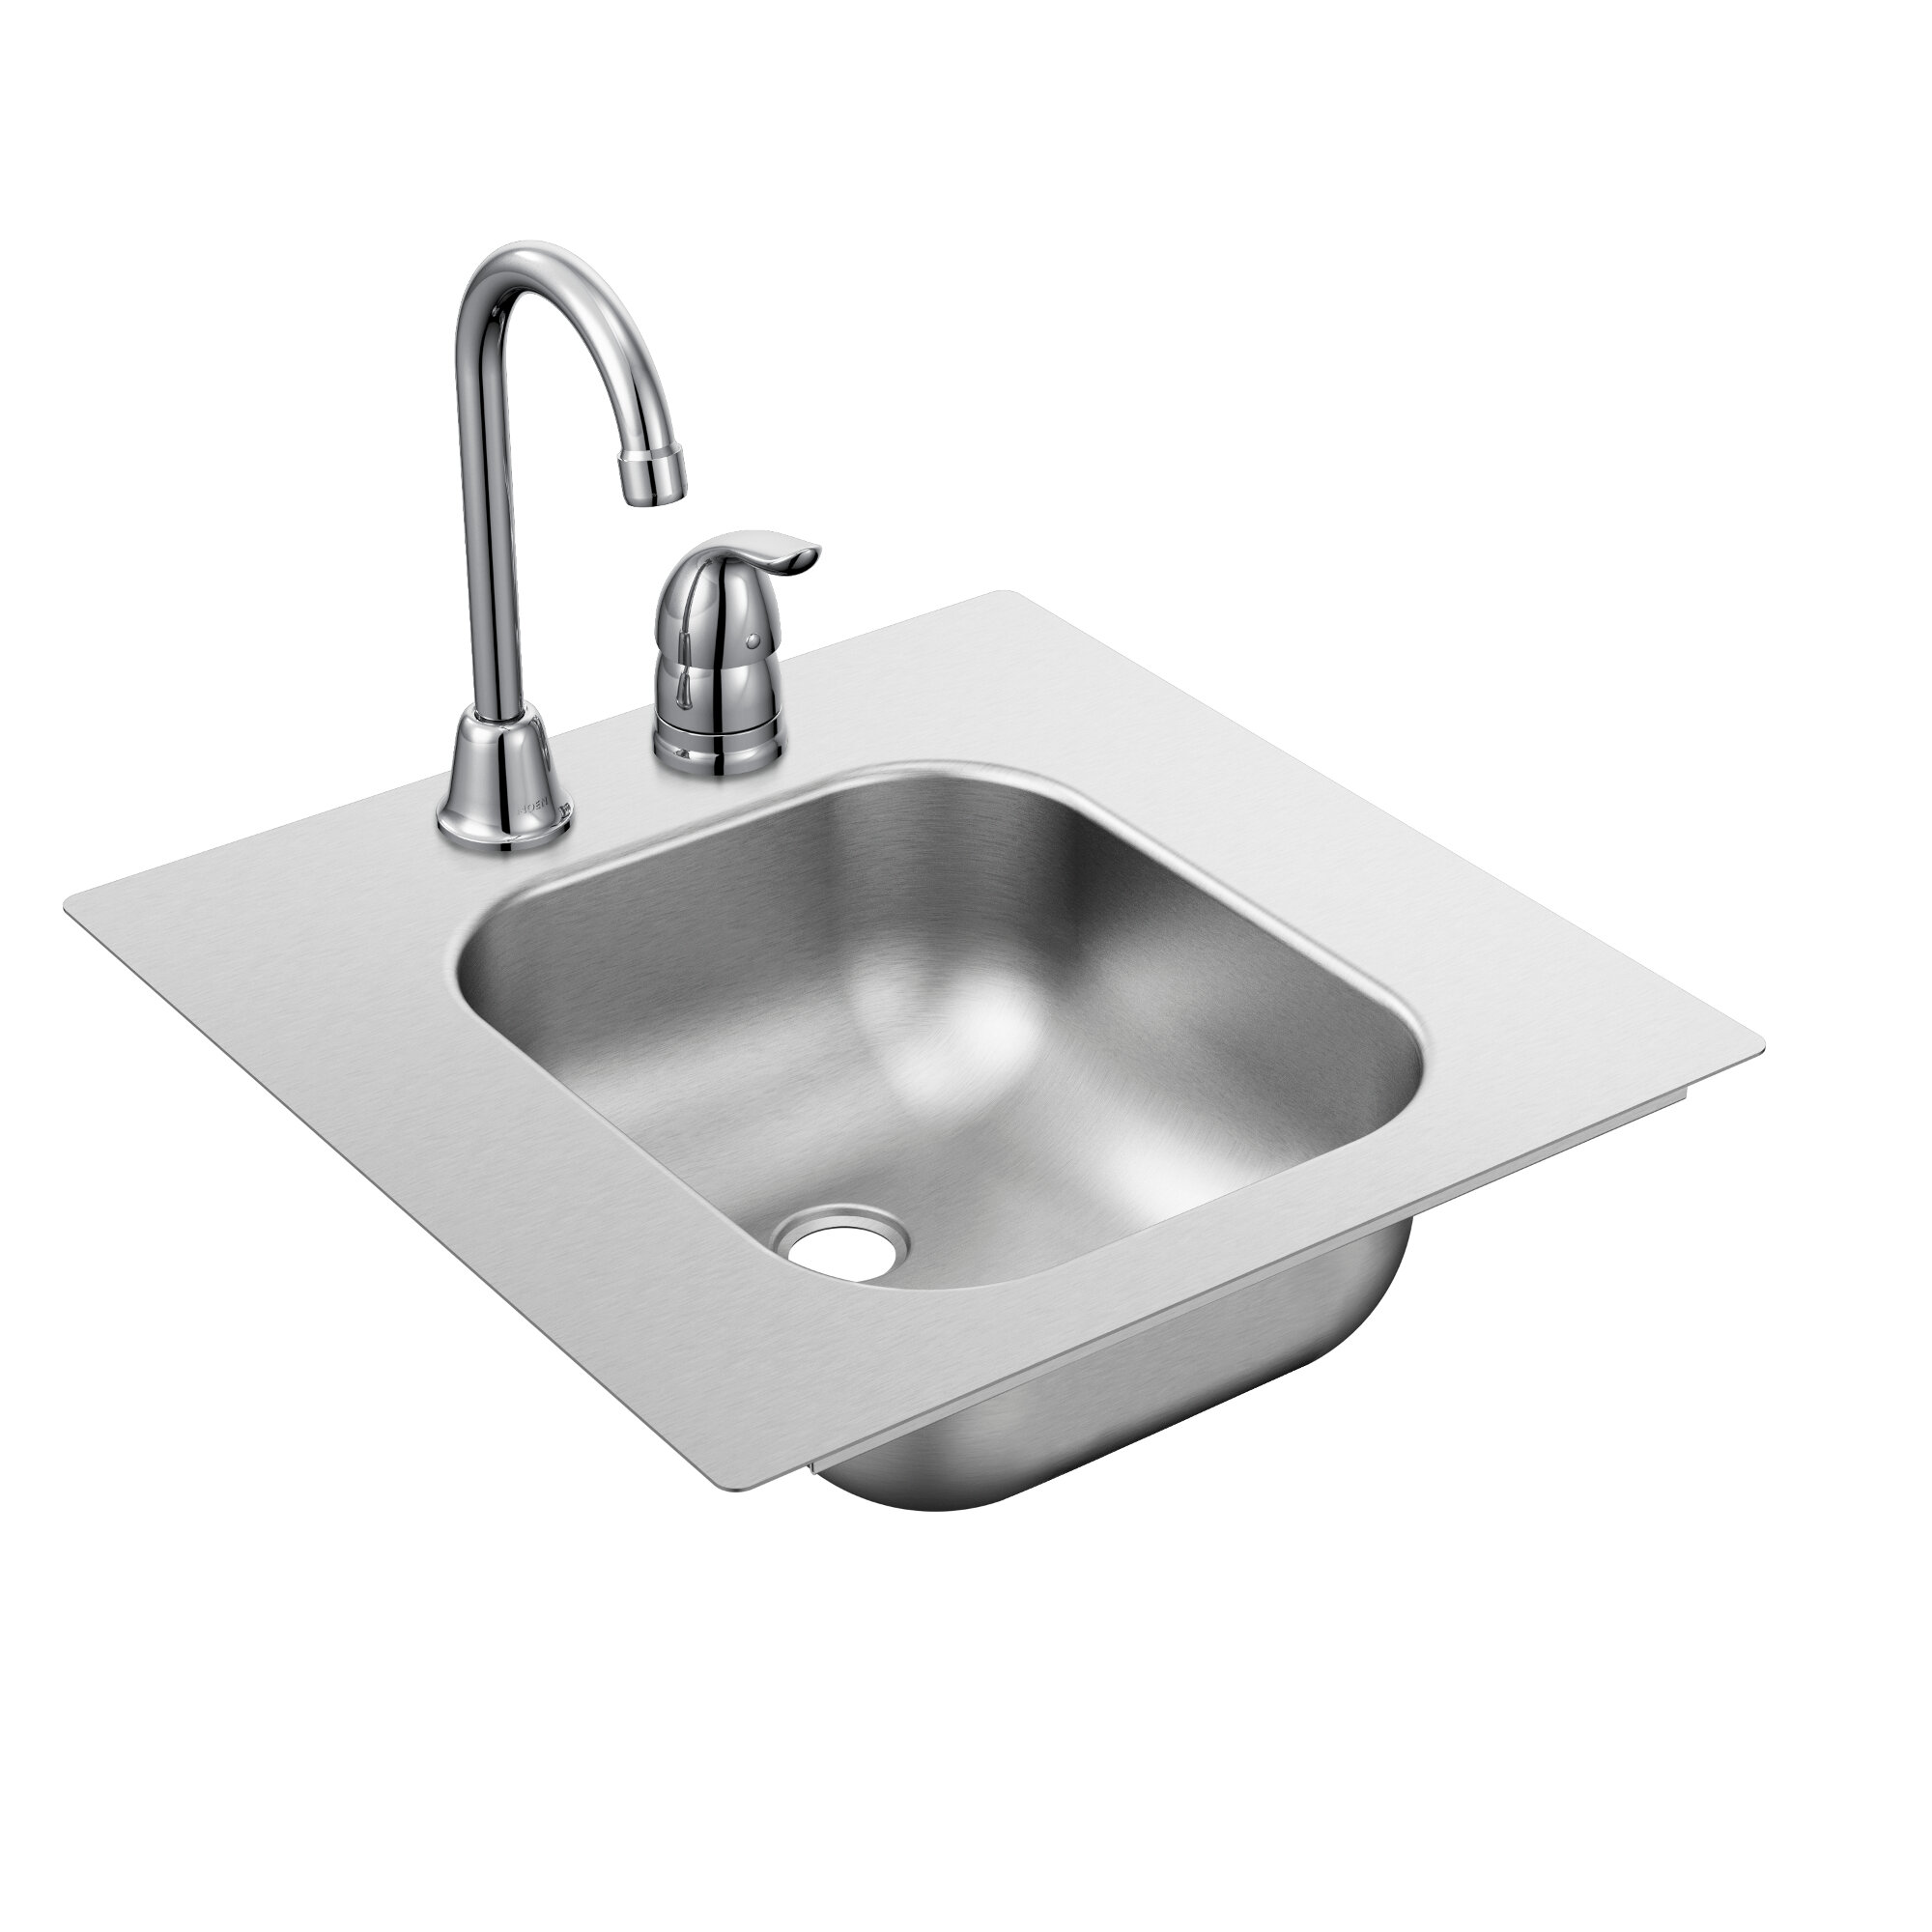 Moen 2200 Series 17 X 17 Drop In Bar Sink With Faucet Wayfair